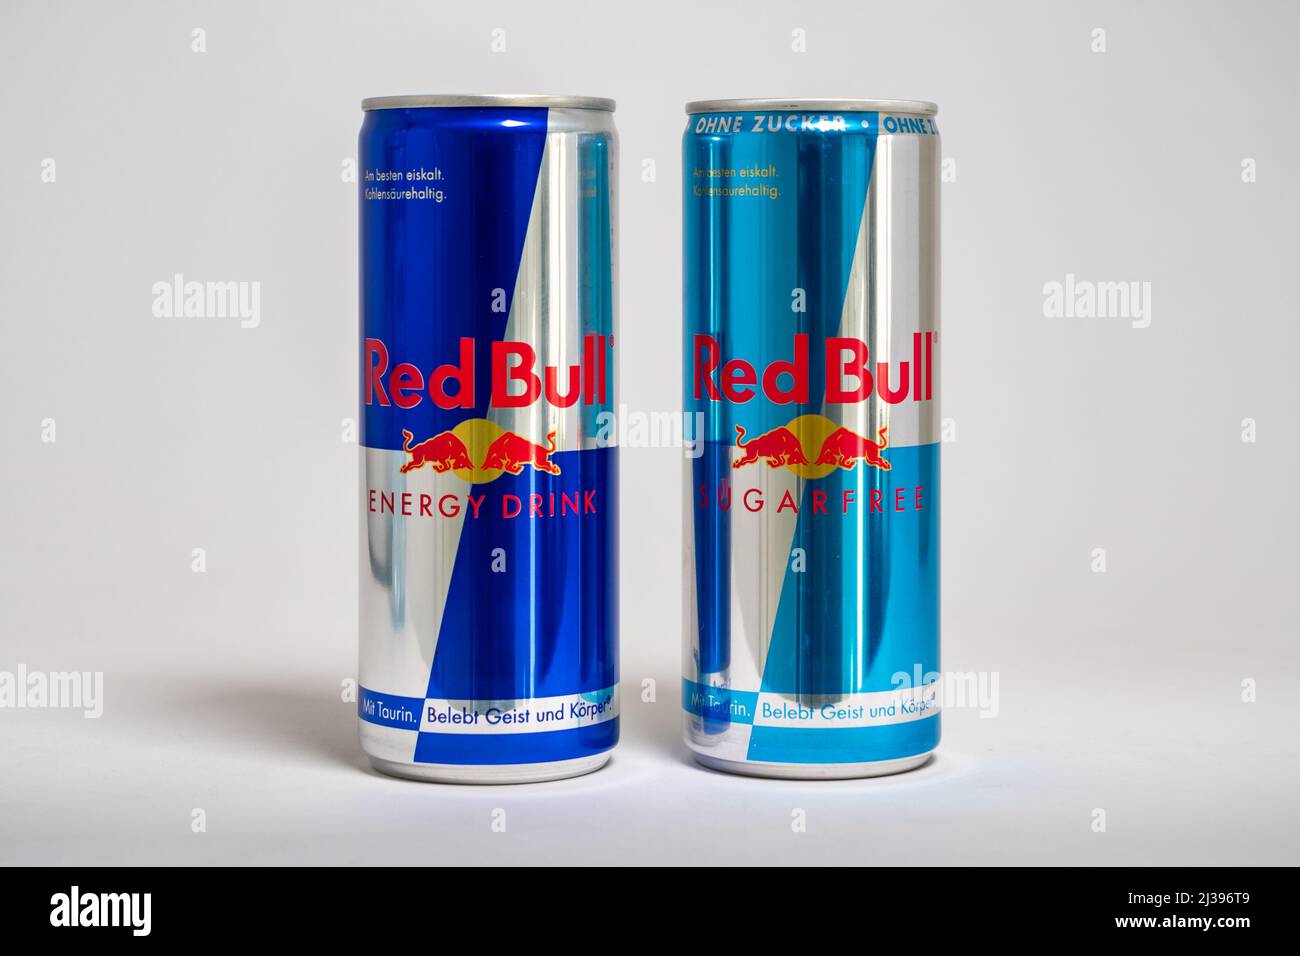 Red Bull Original- und zuckerfreie Dosen nebeneinander. Berühmte Energy-Drink-Marke in verschiedenen Variationen. Lifestyle-Getränk mit Koffein. Stockfoto